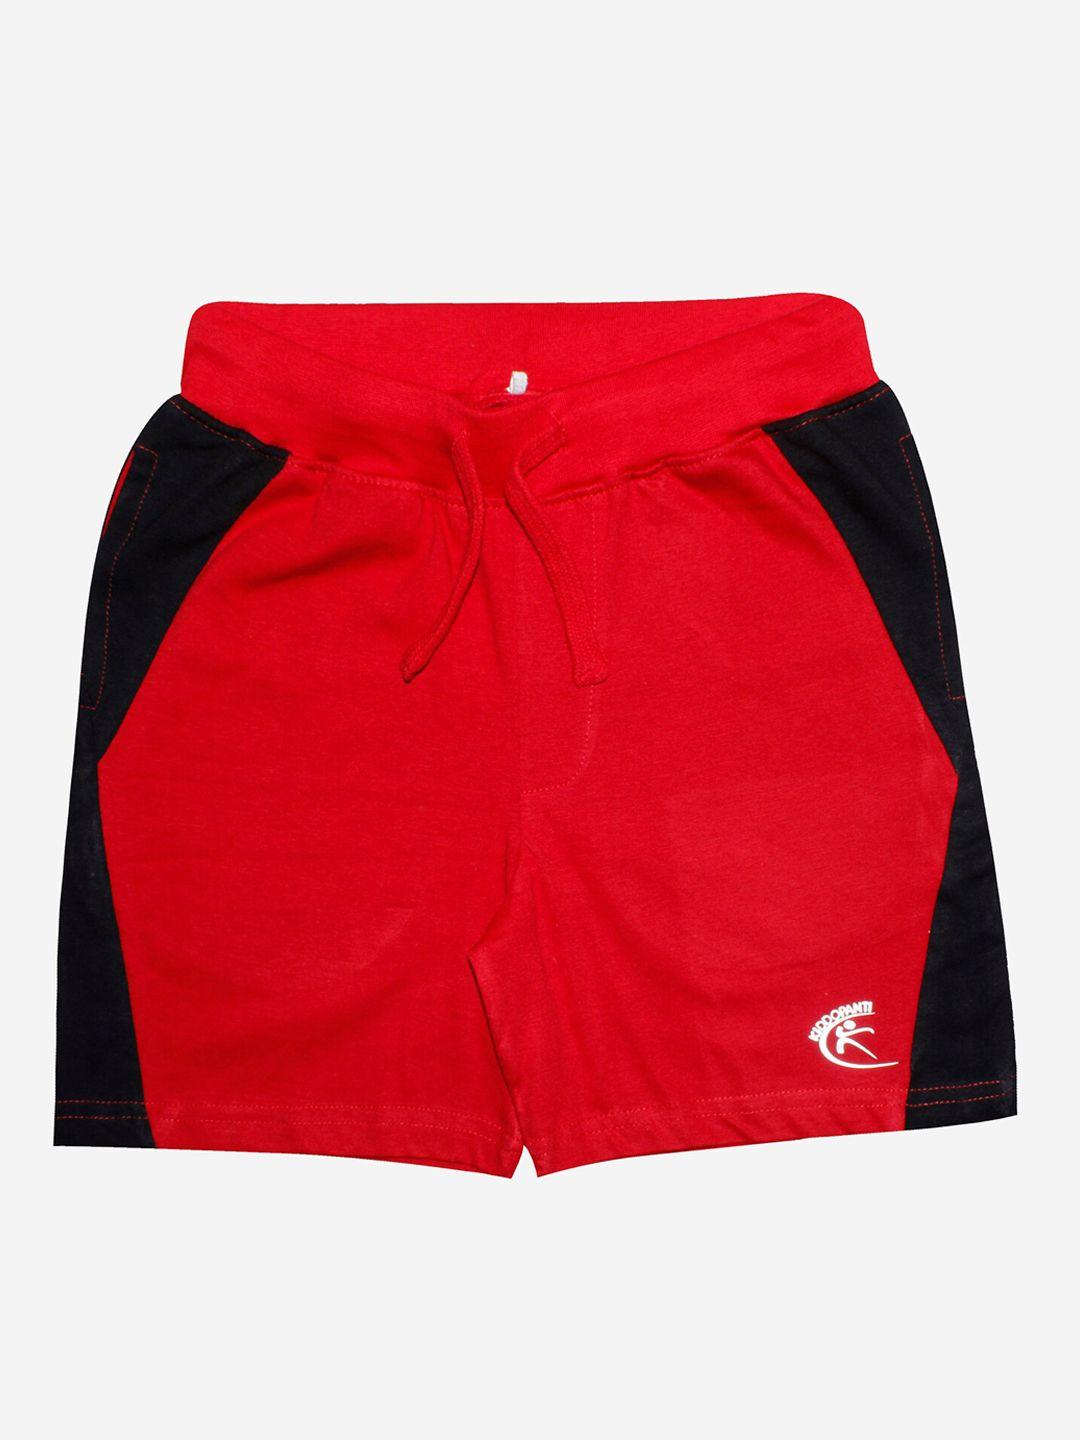 kiddopanti boys red colourblocked shorts